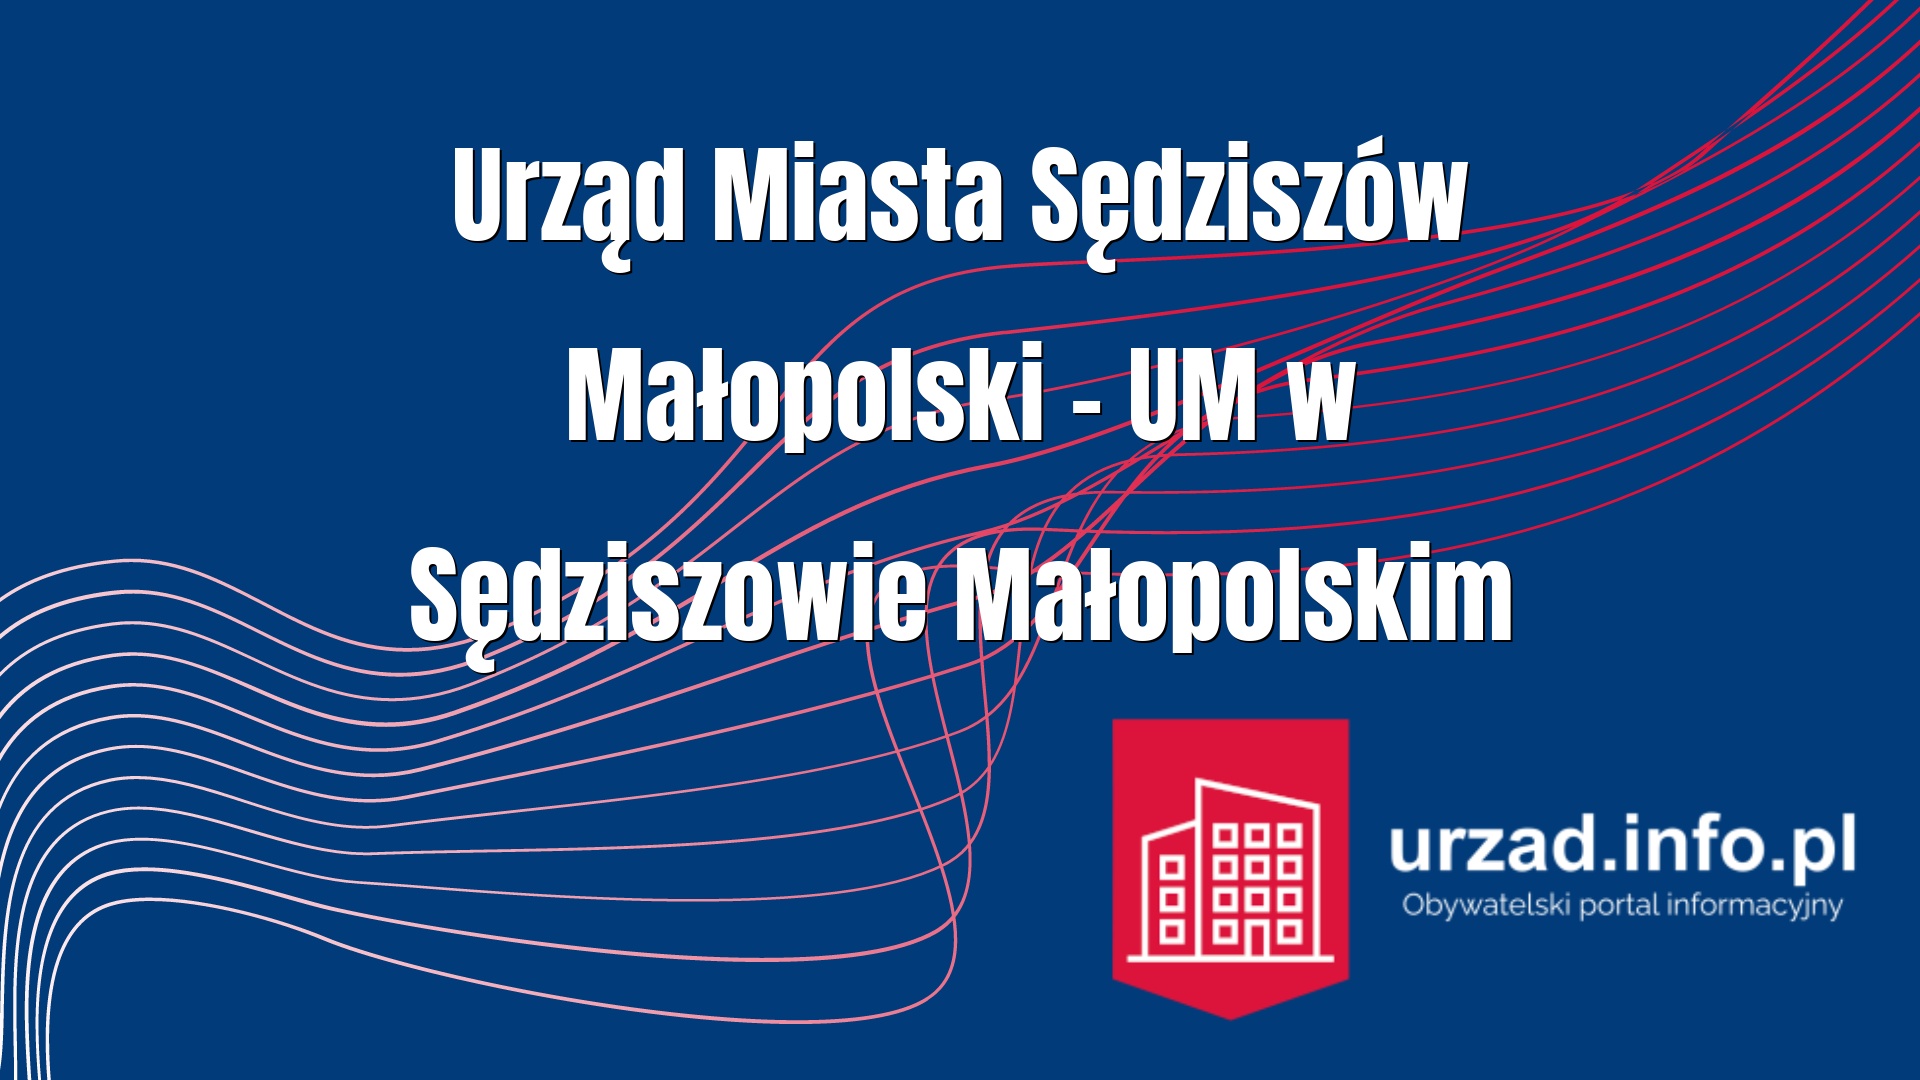 Urząd Miasta Sędziszów Małopolski – UM w Sędziszowie Małopolskim